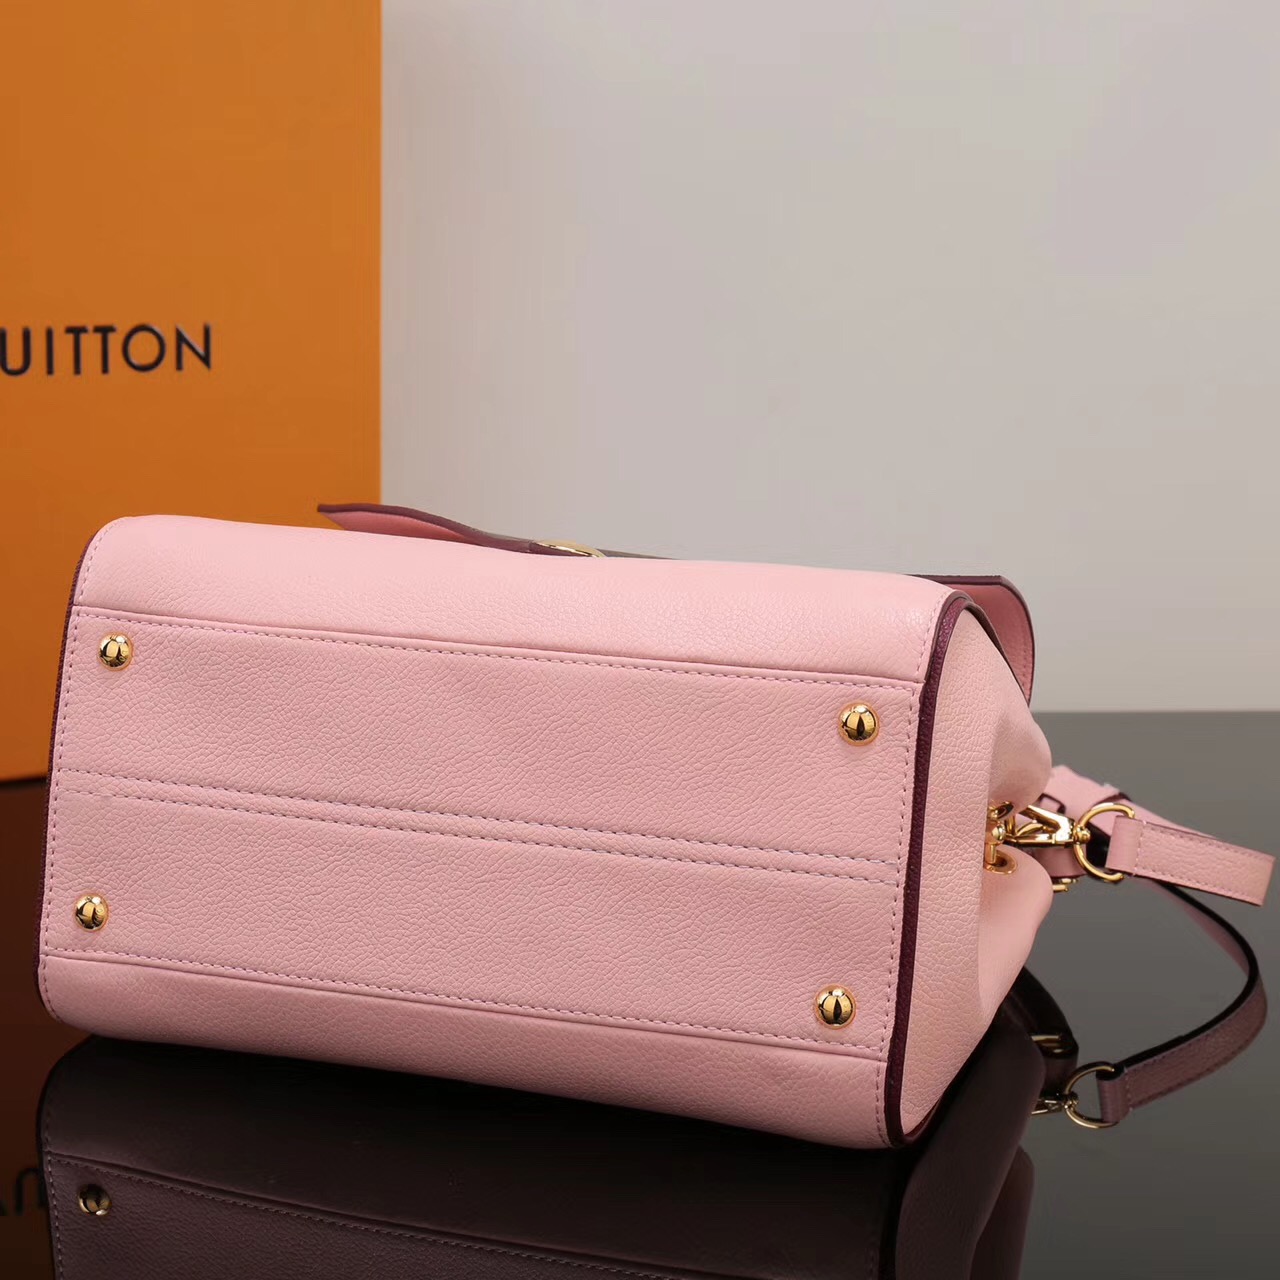 LV Louis Vuitton Monogram Double V Handbags Shoulder M54440 Leather bags Pink [LV1058] - $389.00 ...